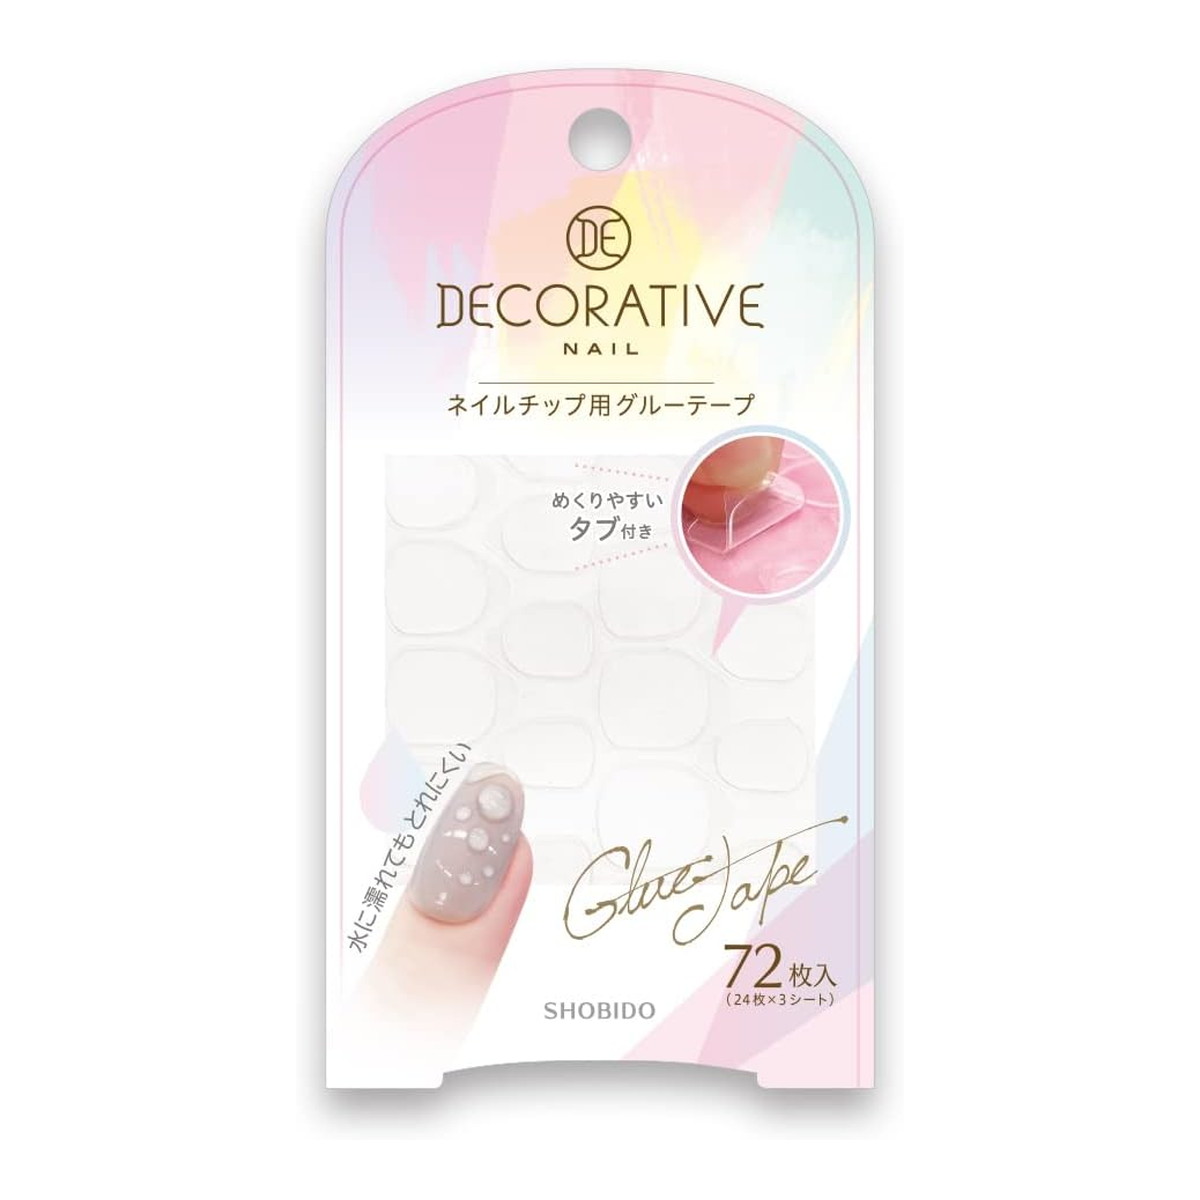 粧美堂 Decorative Nail デコラティブ ネイル TN81281 ネイルチップ用 グルーテープ (24枚×3シート) 72枚入